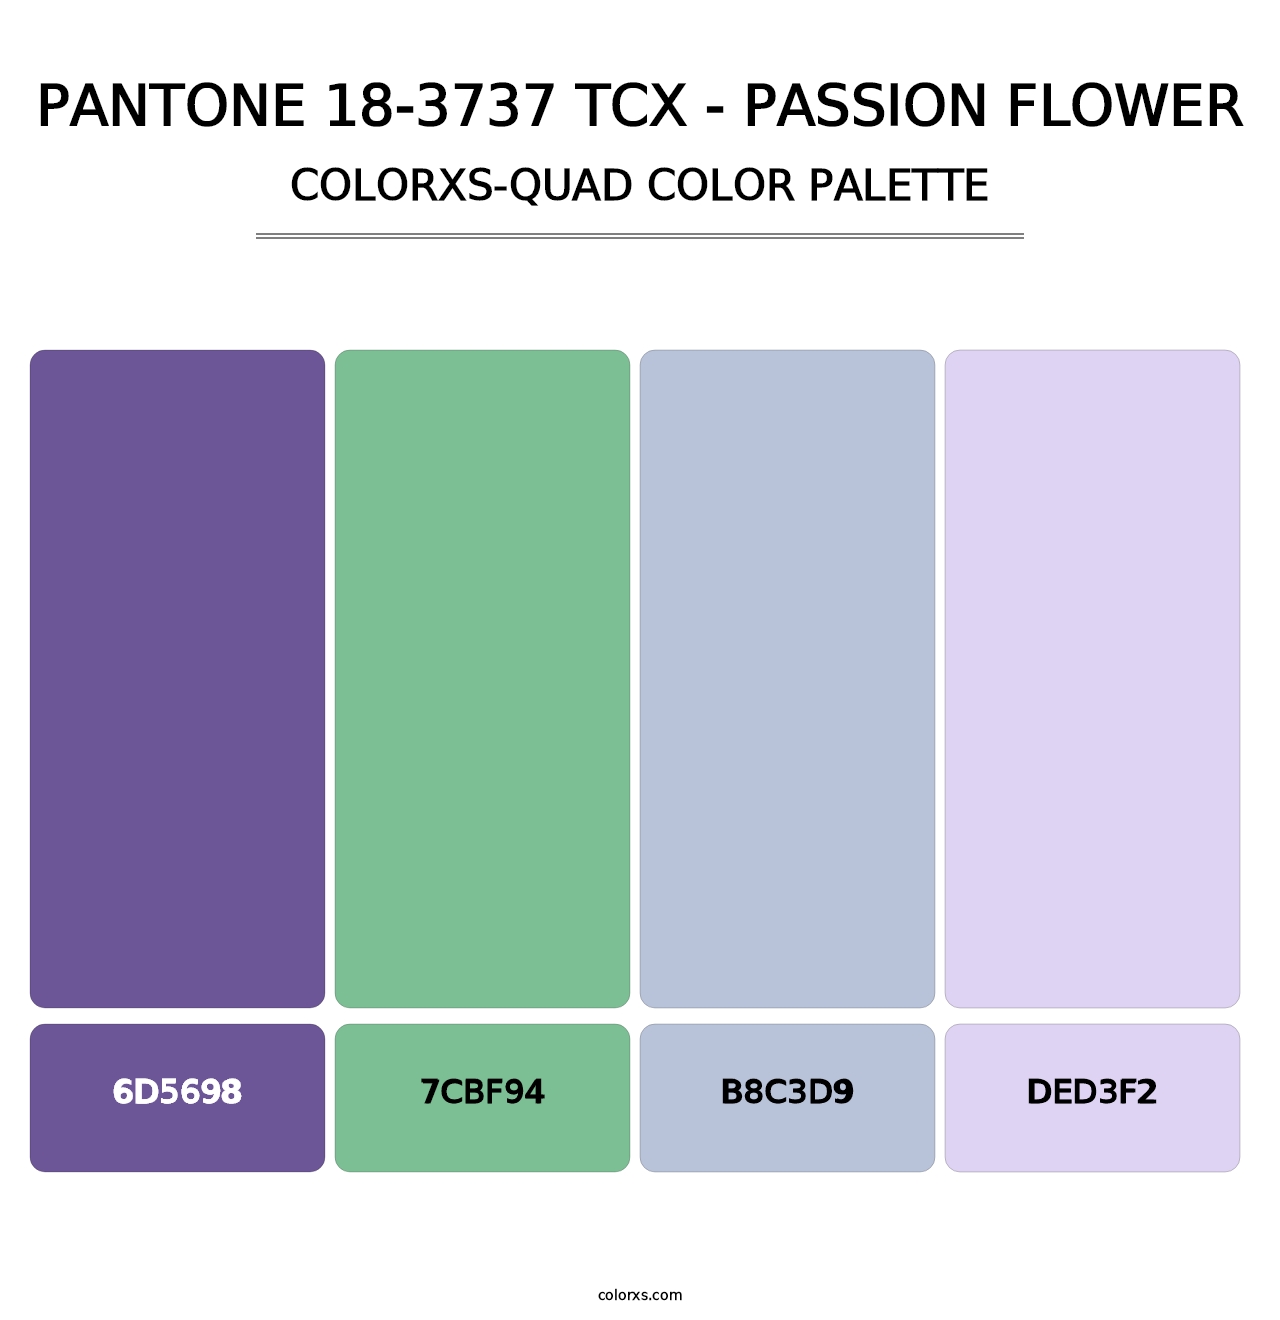 PANTONE 18-3737 TCX - Passion Flower - Colorxs Quad Palette